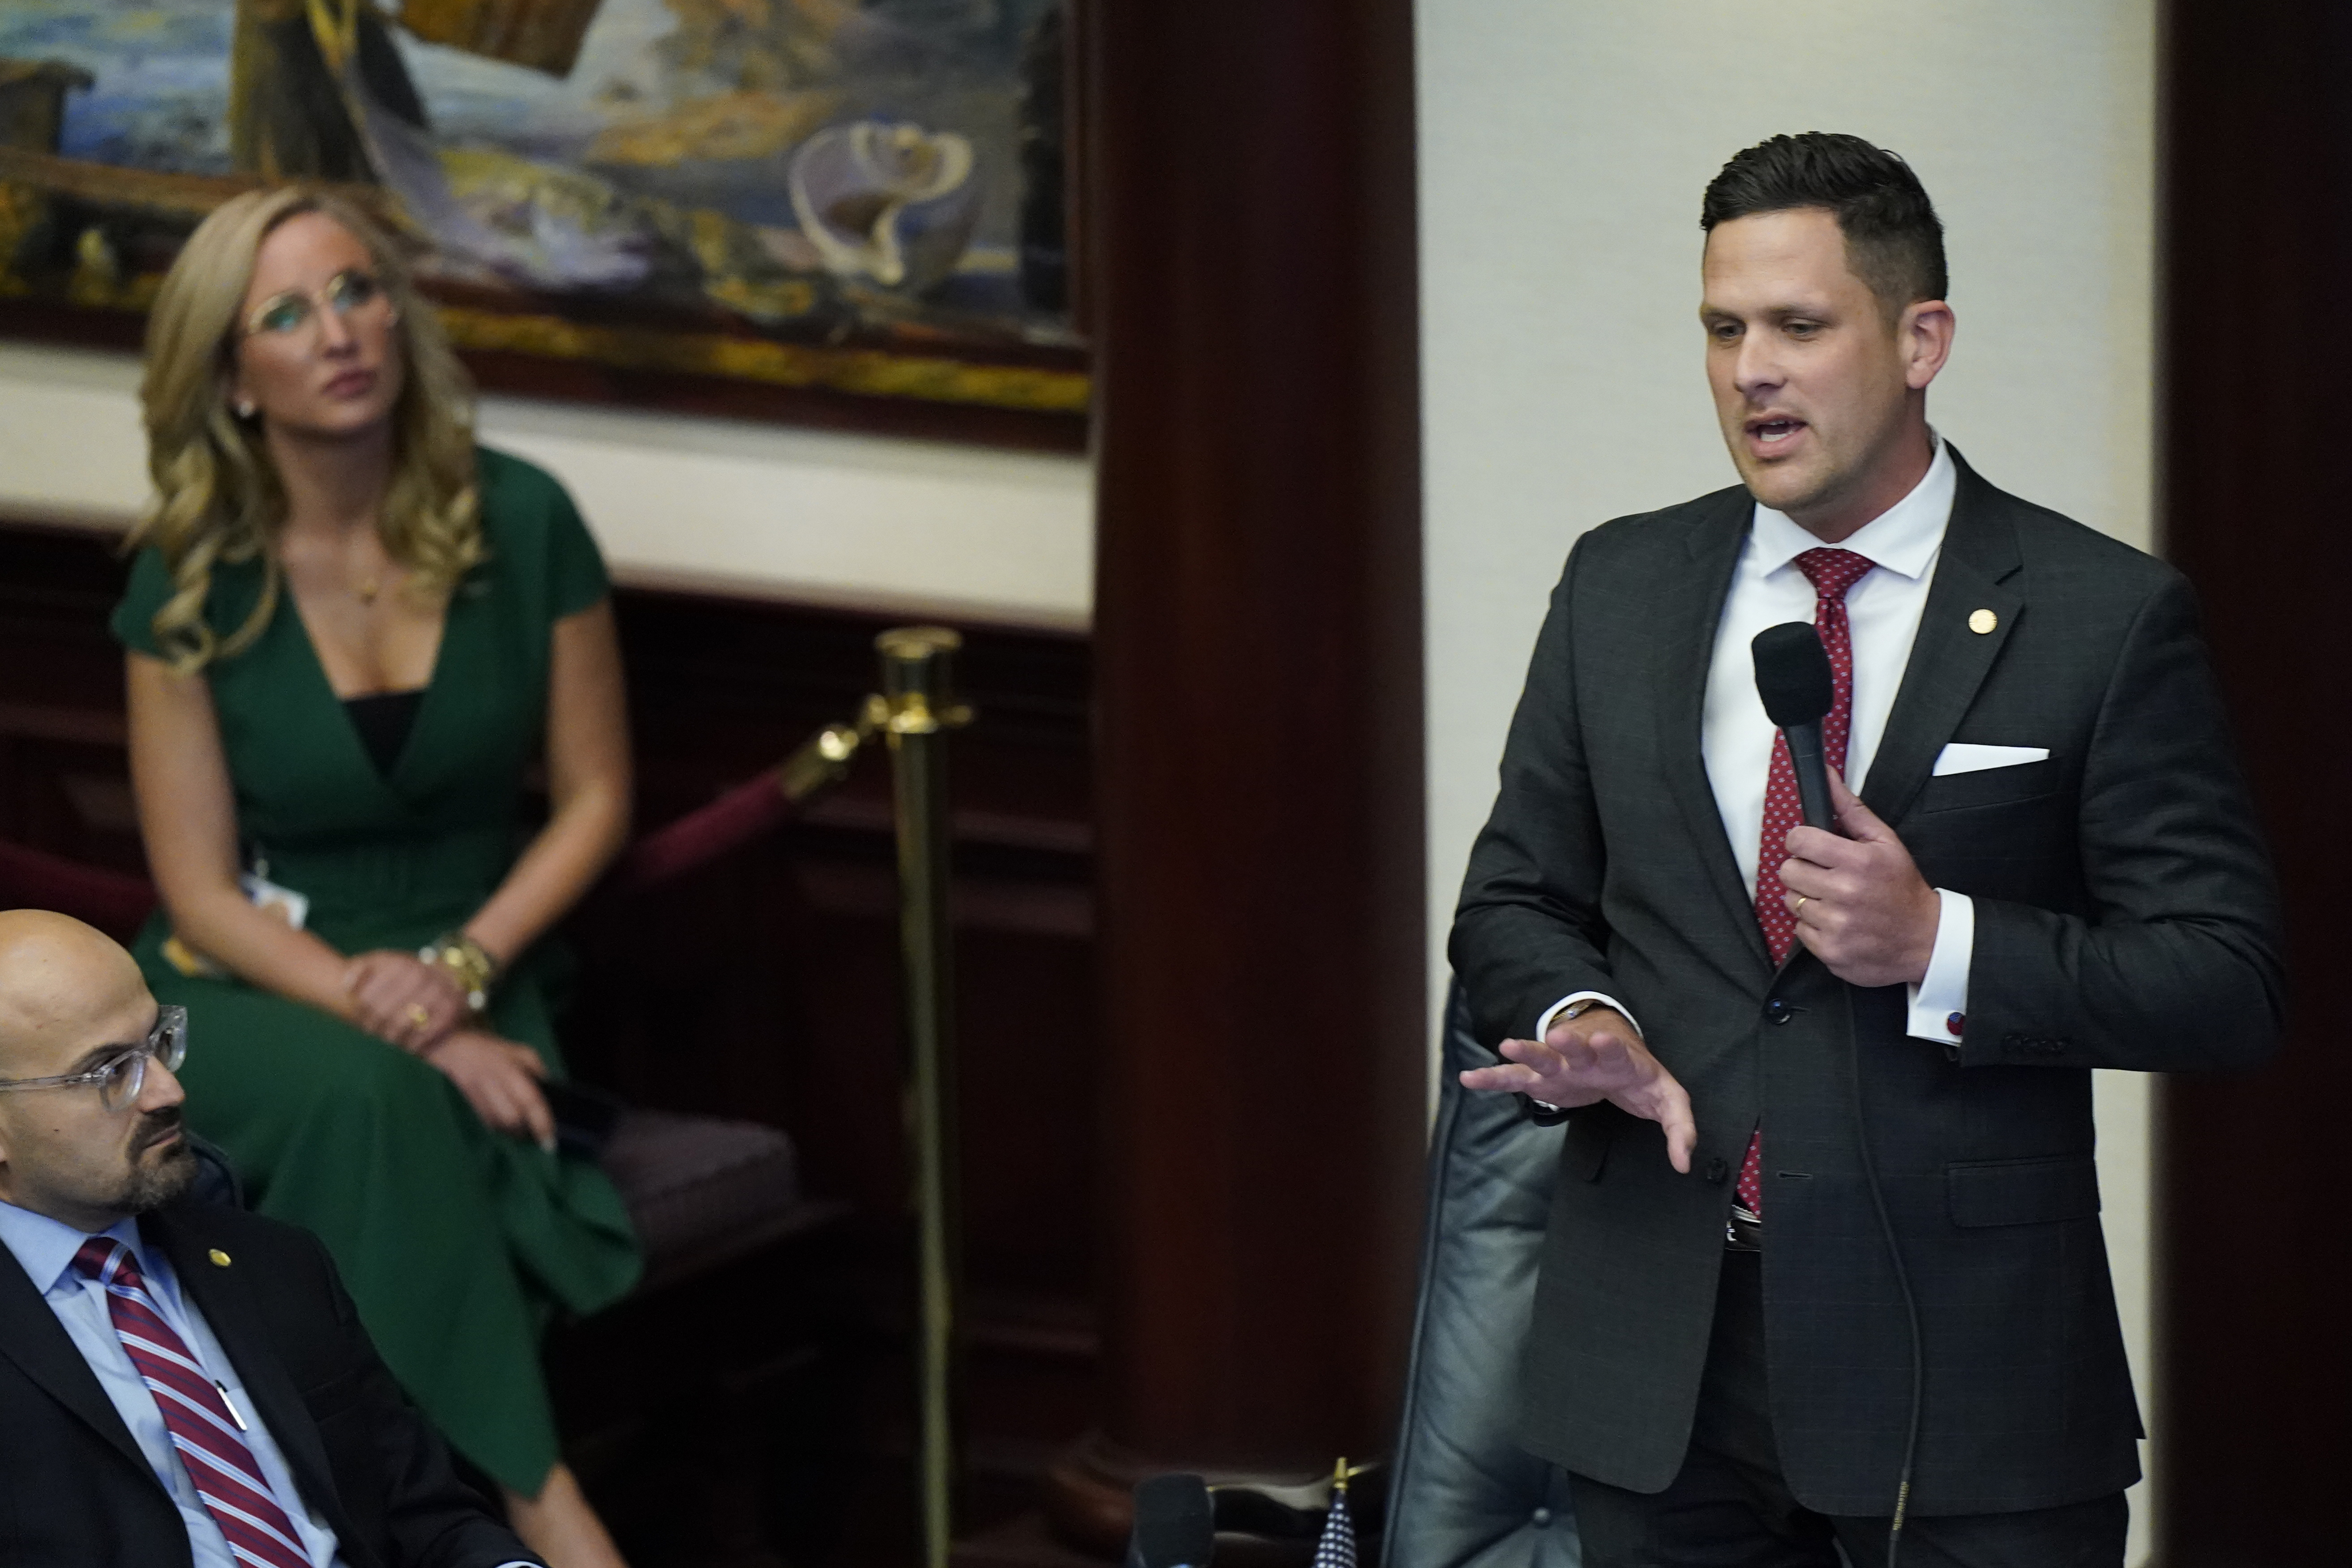 Florida cyber sex crimes bill passes after senators story